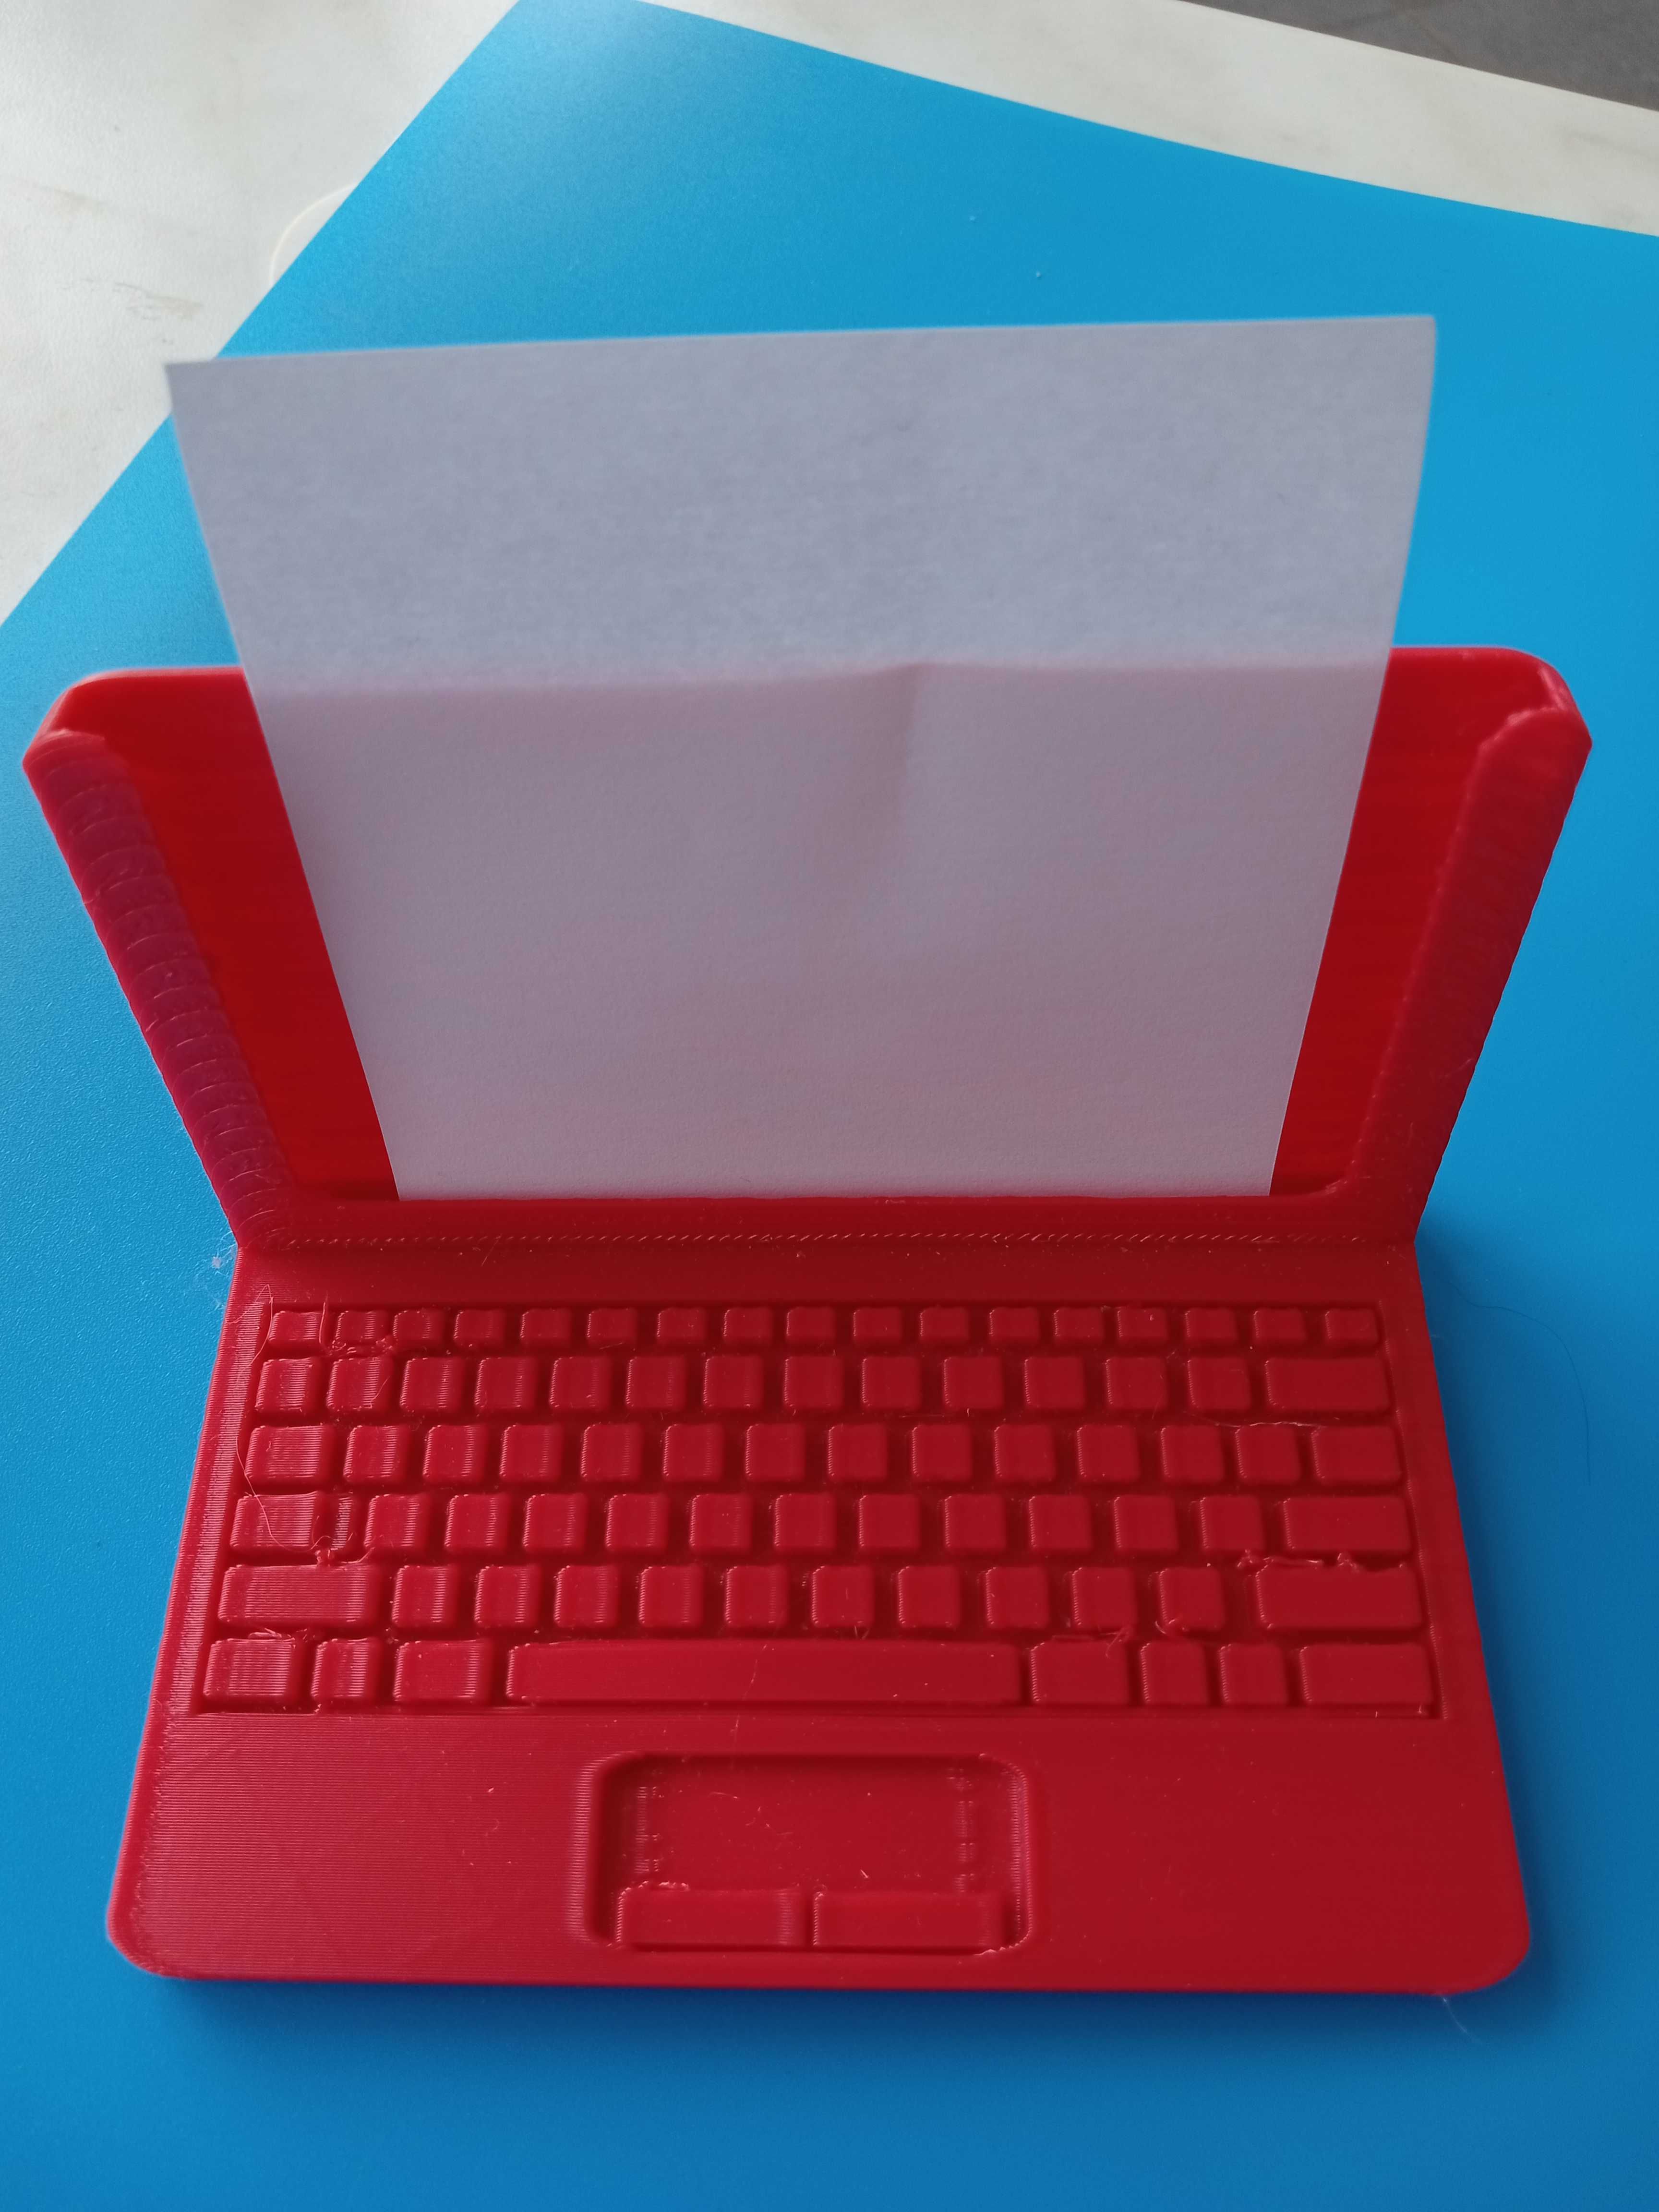 Wizytownik w kształcie laptopa stojący